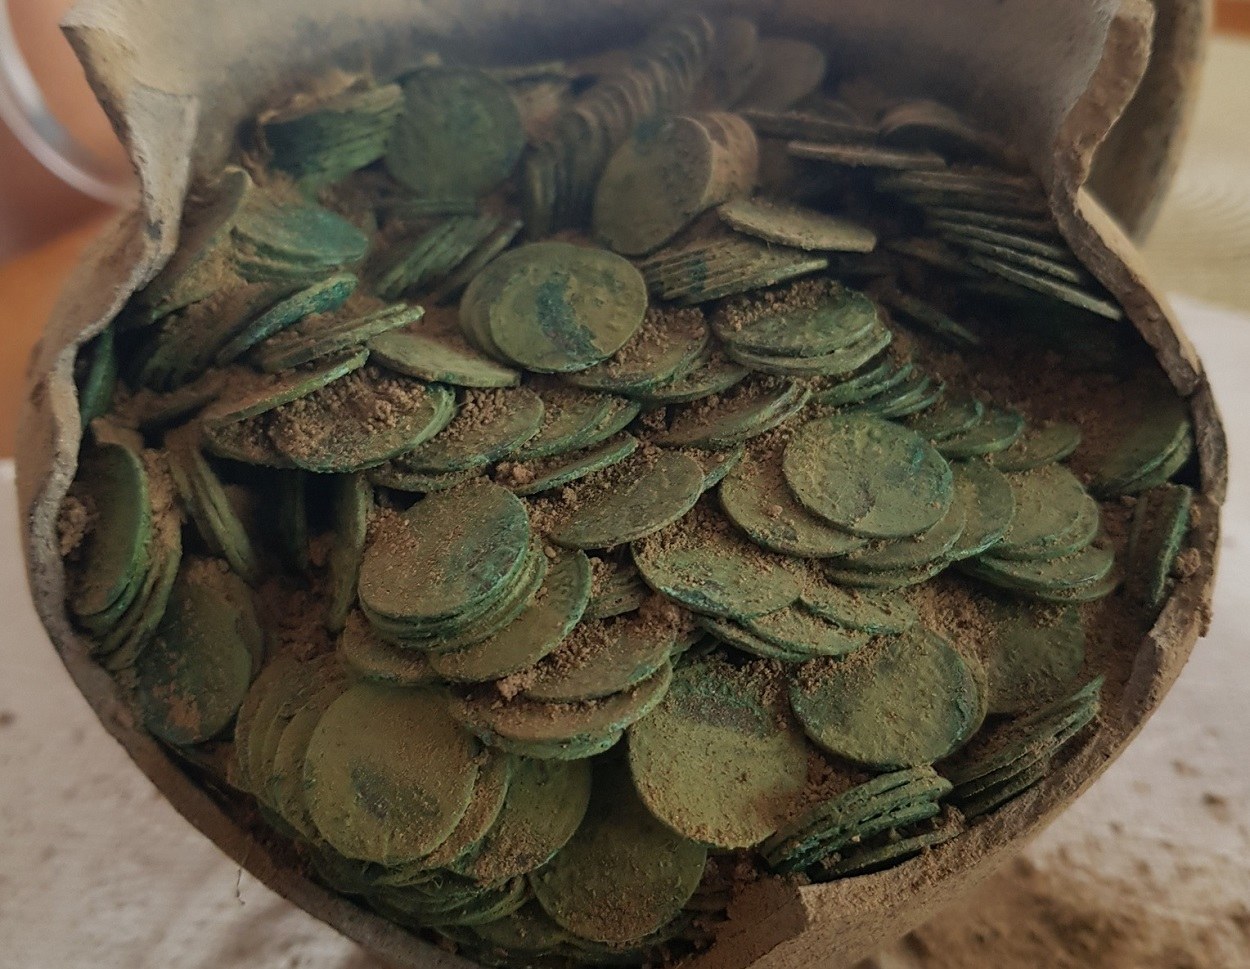 Los arqueólogos creen que la jarra de arcilla que contenía la horda de monedas fue enterrada deliberadamente en una granja en el este de Polonia en la segunda mitad del siglo XVII.